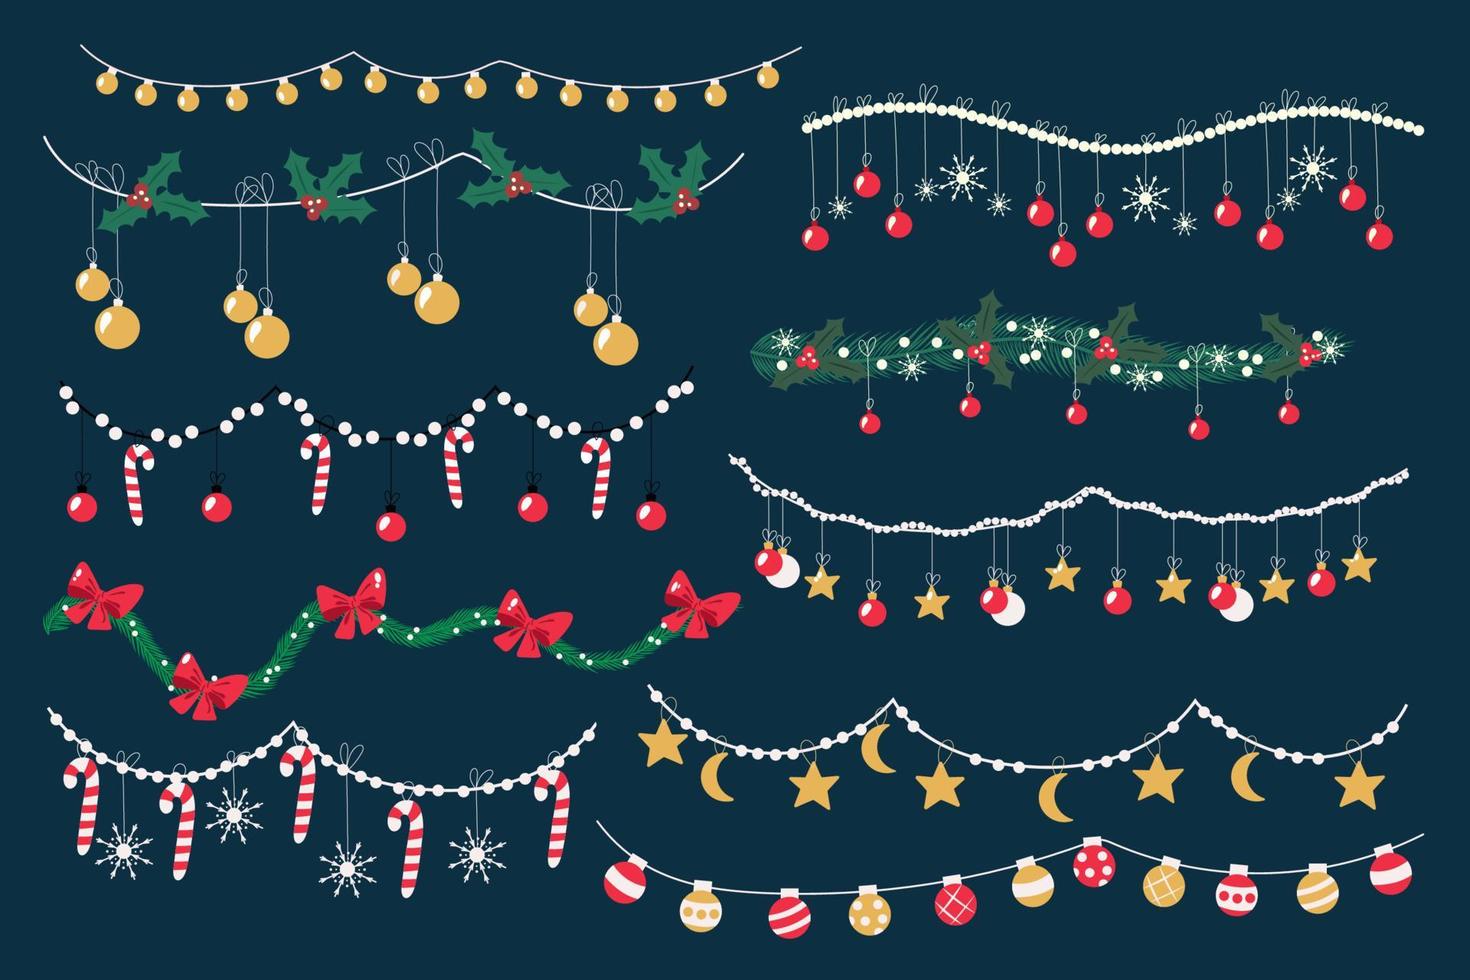 conjunto de guirnaldas navideñas. brillante y colorida decoración navideña dibujada a mano. caramelos navideños vectoriales, muérdagos, copos de nieve, estrellas y abetos. vector